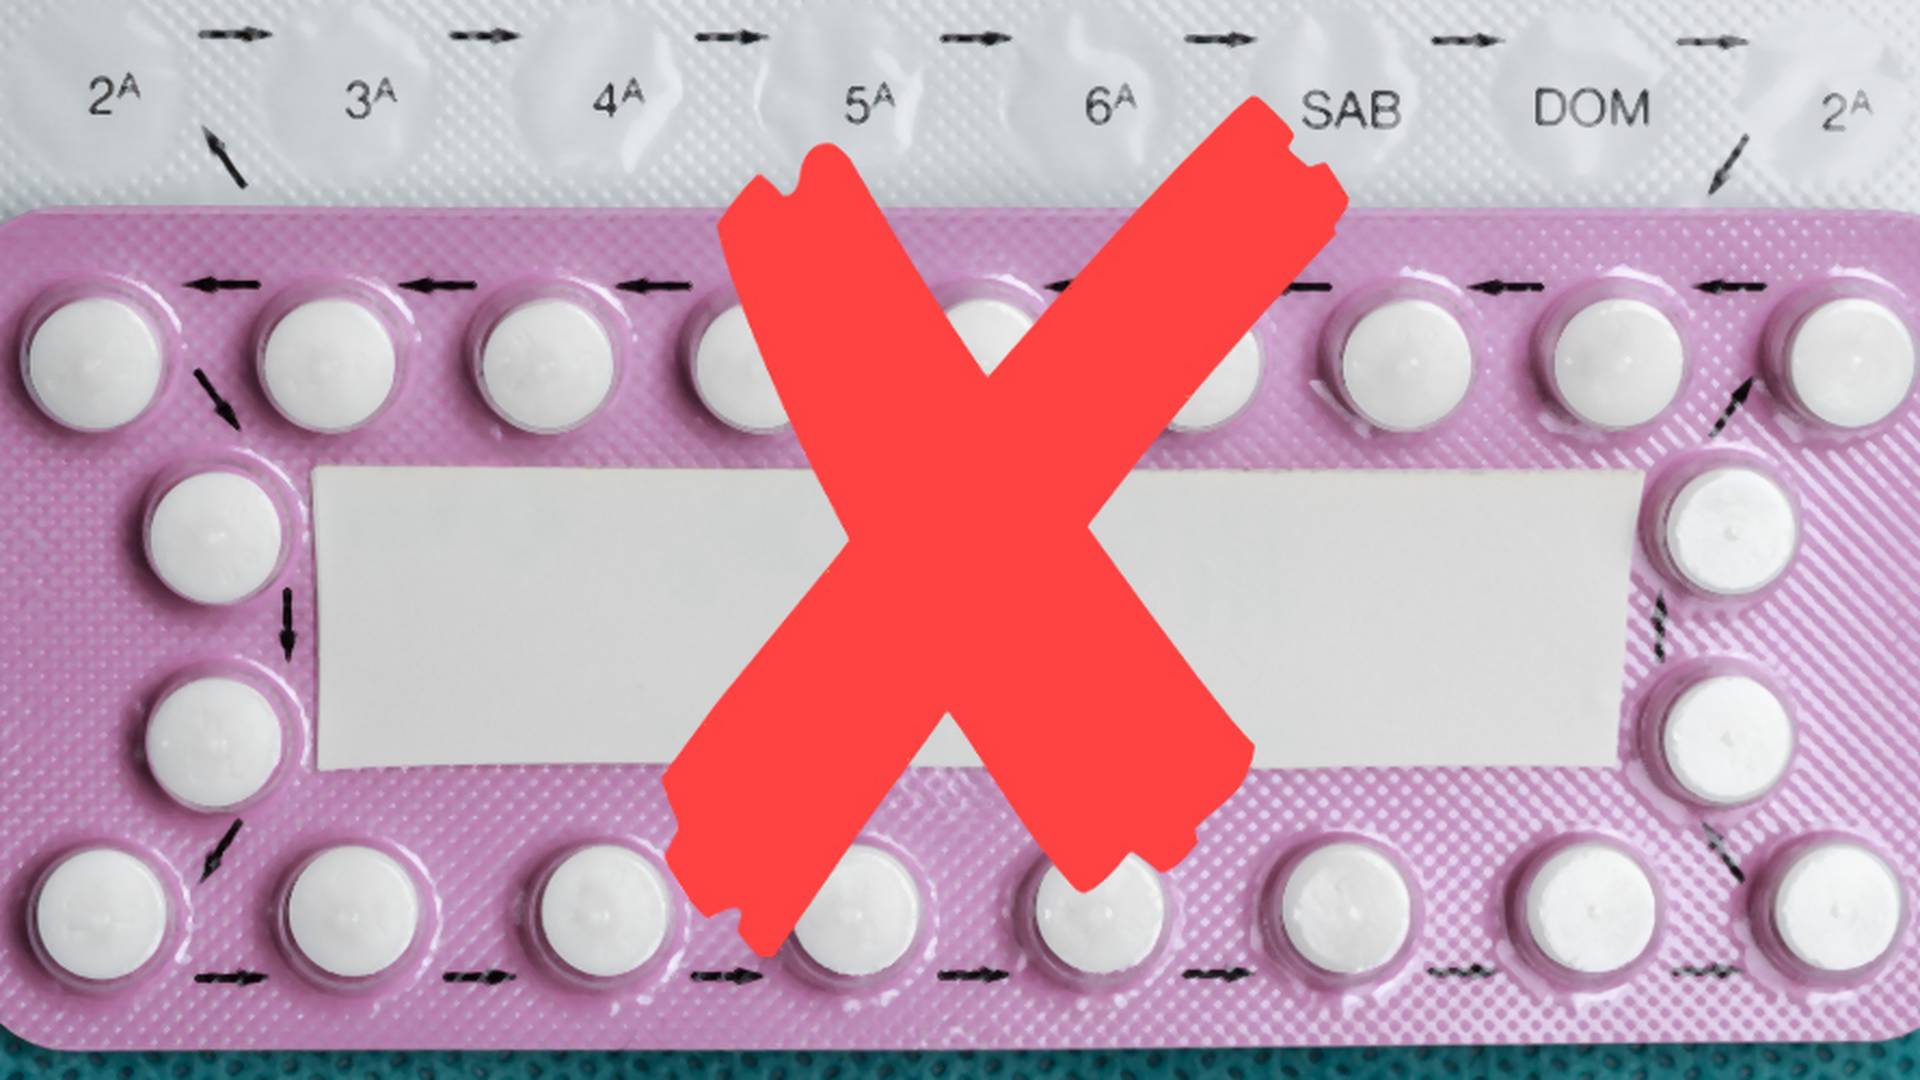 Ginekolodzy odmawiają wypisywania antykoncepcji powołując się na klauzulę sumienia - "Skandal i zaścianek"